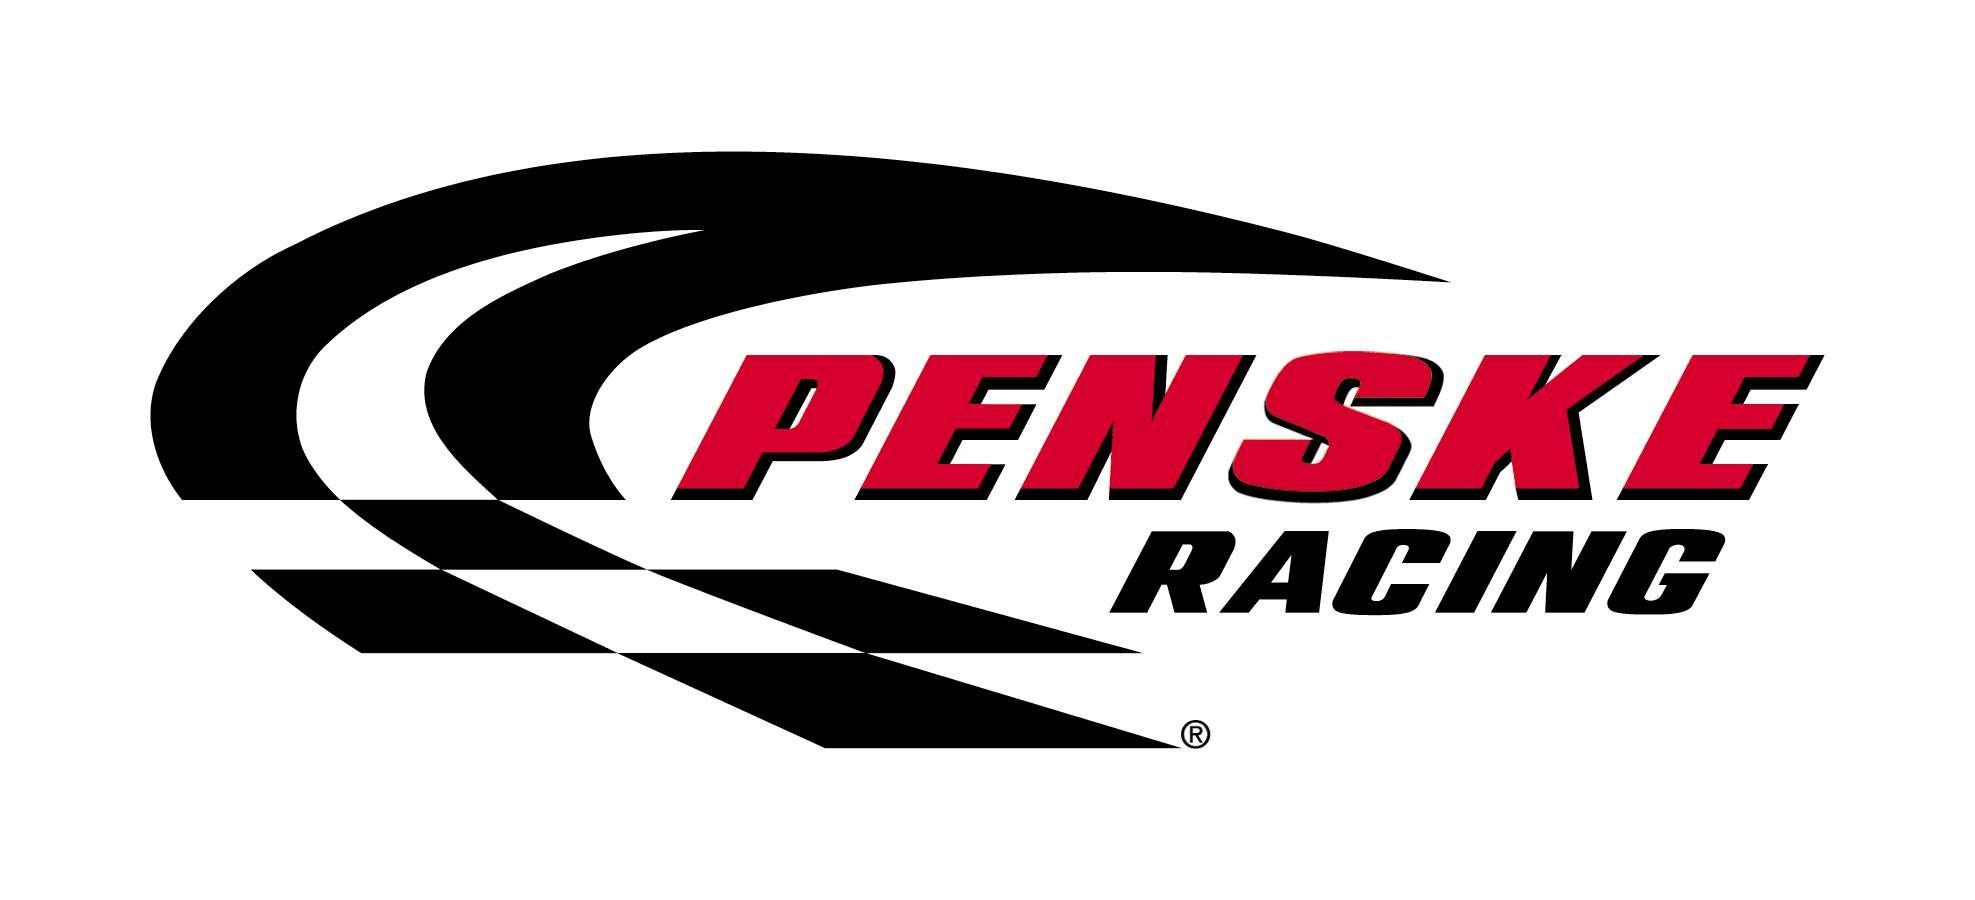 Race Car Logo - Racing Cars: Racing Cars Logos